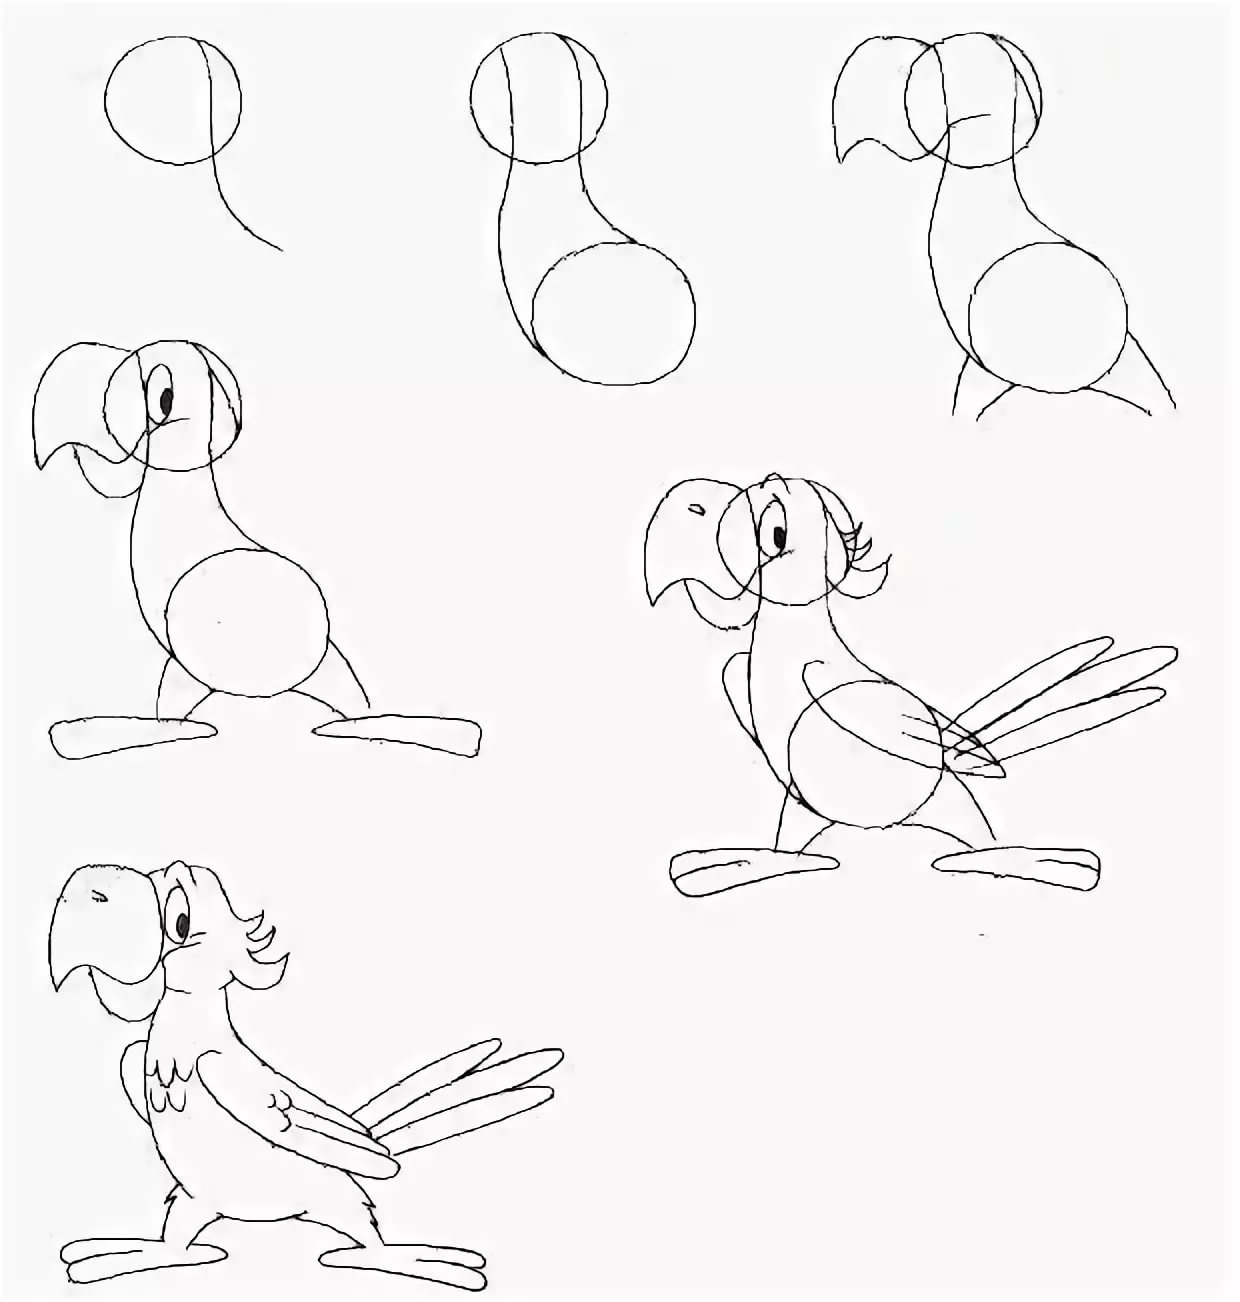 Рисуем пошагово. Уроки рисования для начинающих. Уроки рисования попугая. Пошаговое рисование карандашом. Рисование карандашом животных для начинающих.